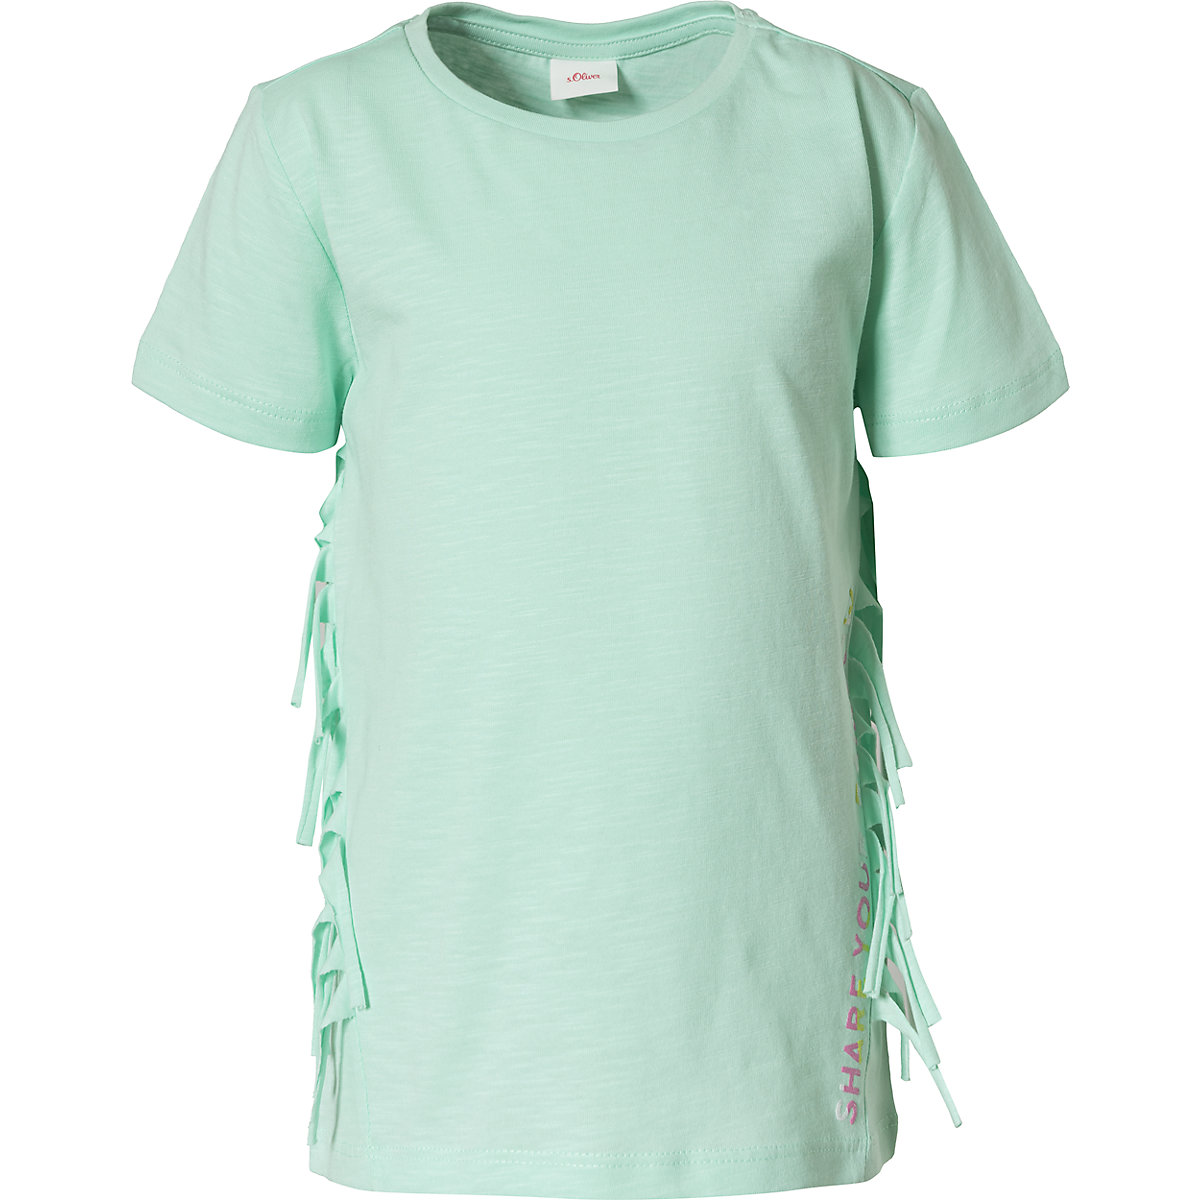 s.Oliver T-Shirt für Mädchen aqua